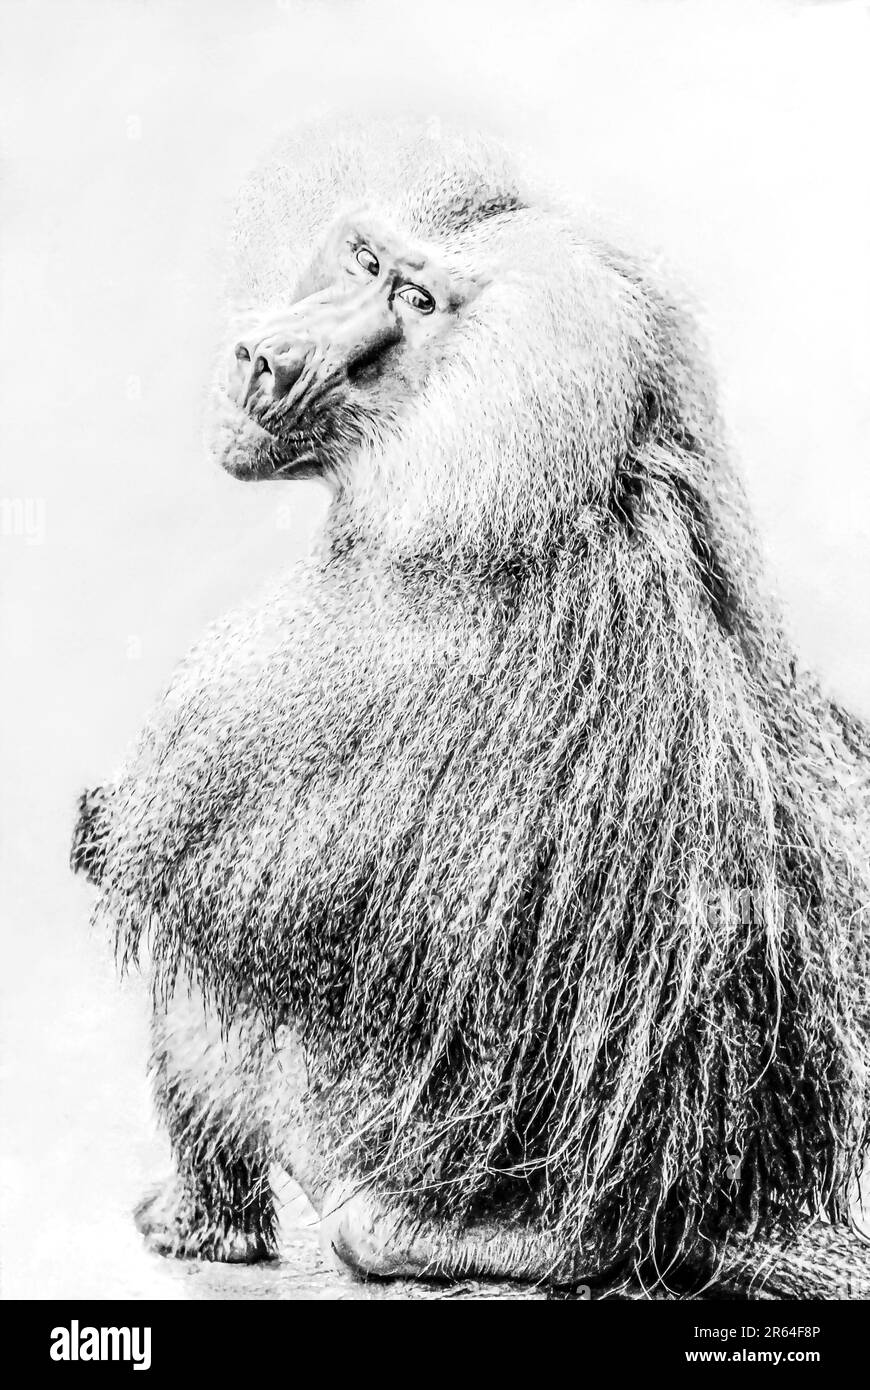 Portrait noir et blanc d'un babouin Hamadryas (Papio hamadryas) regardant dans l'appareil photo Banque D'Images